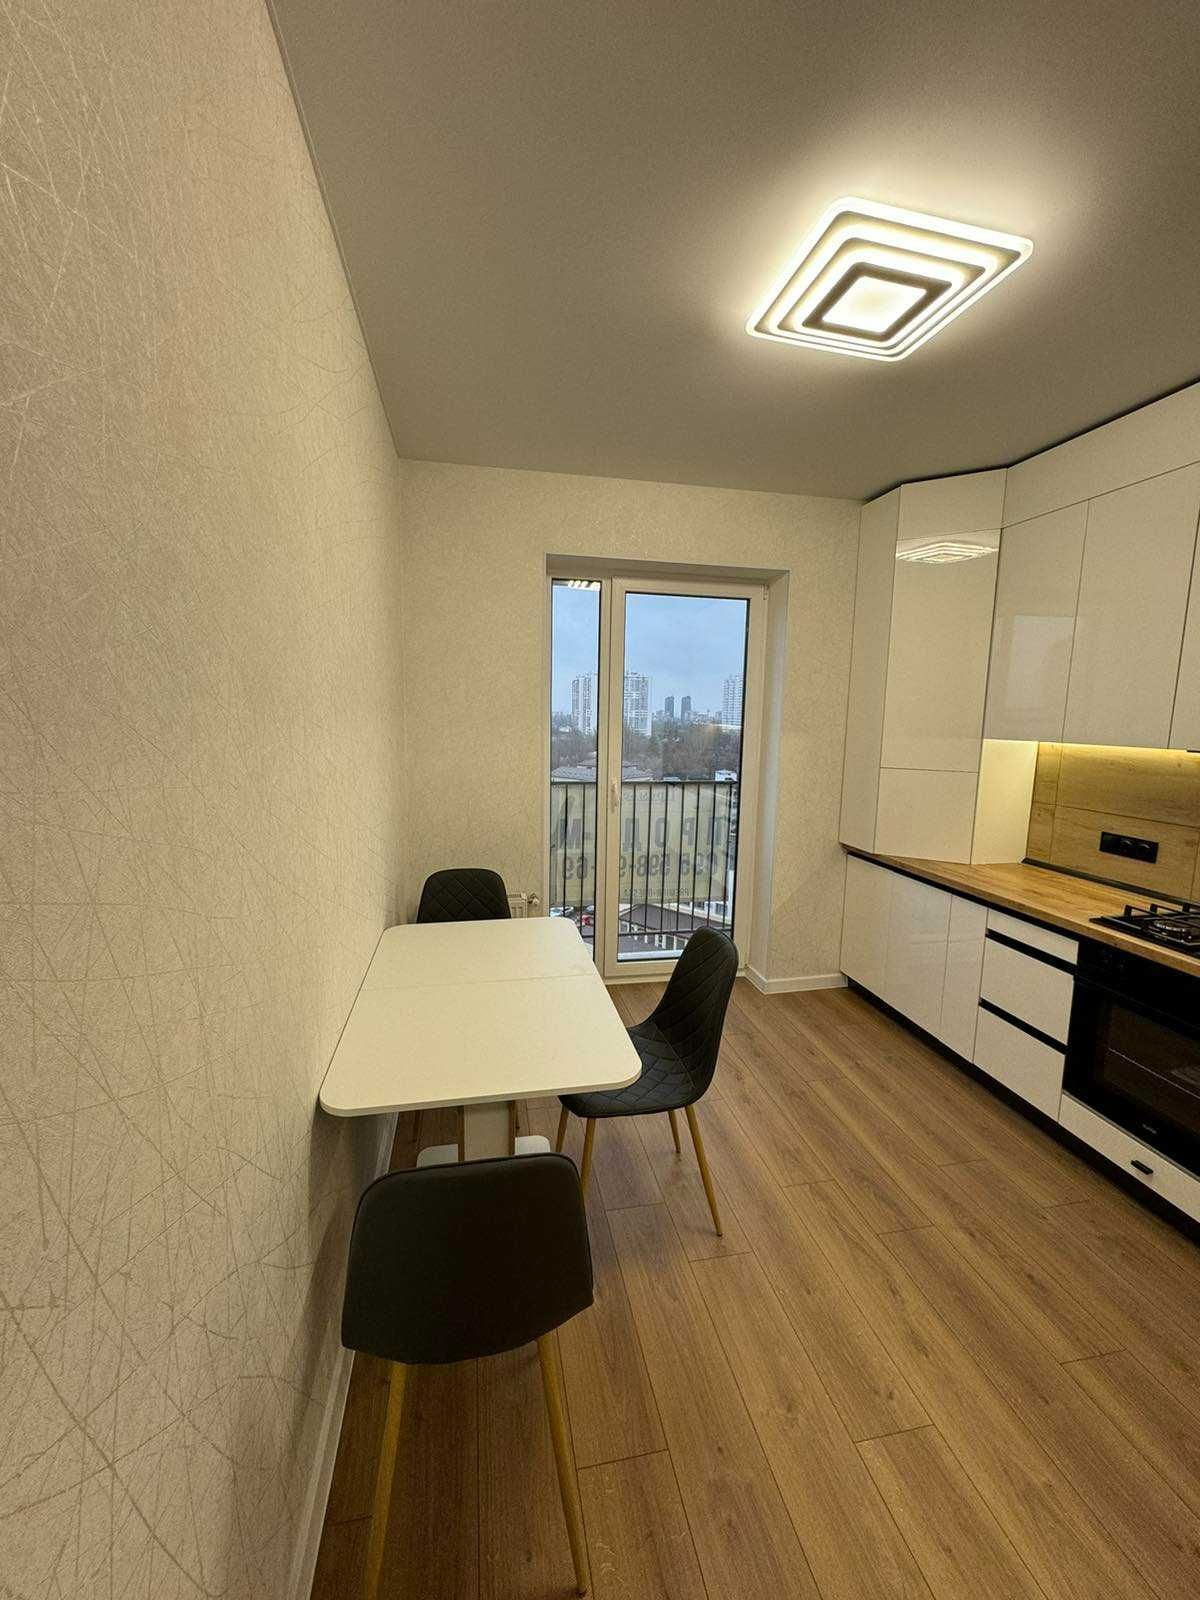 Реальная квартира 1 комнатная с ремонтом ЖК Виа Рома Два Балкона